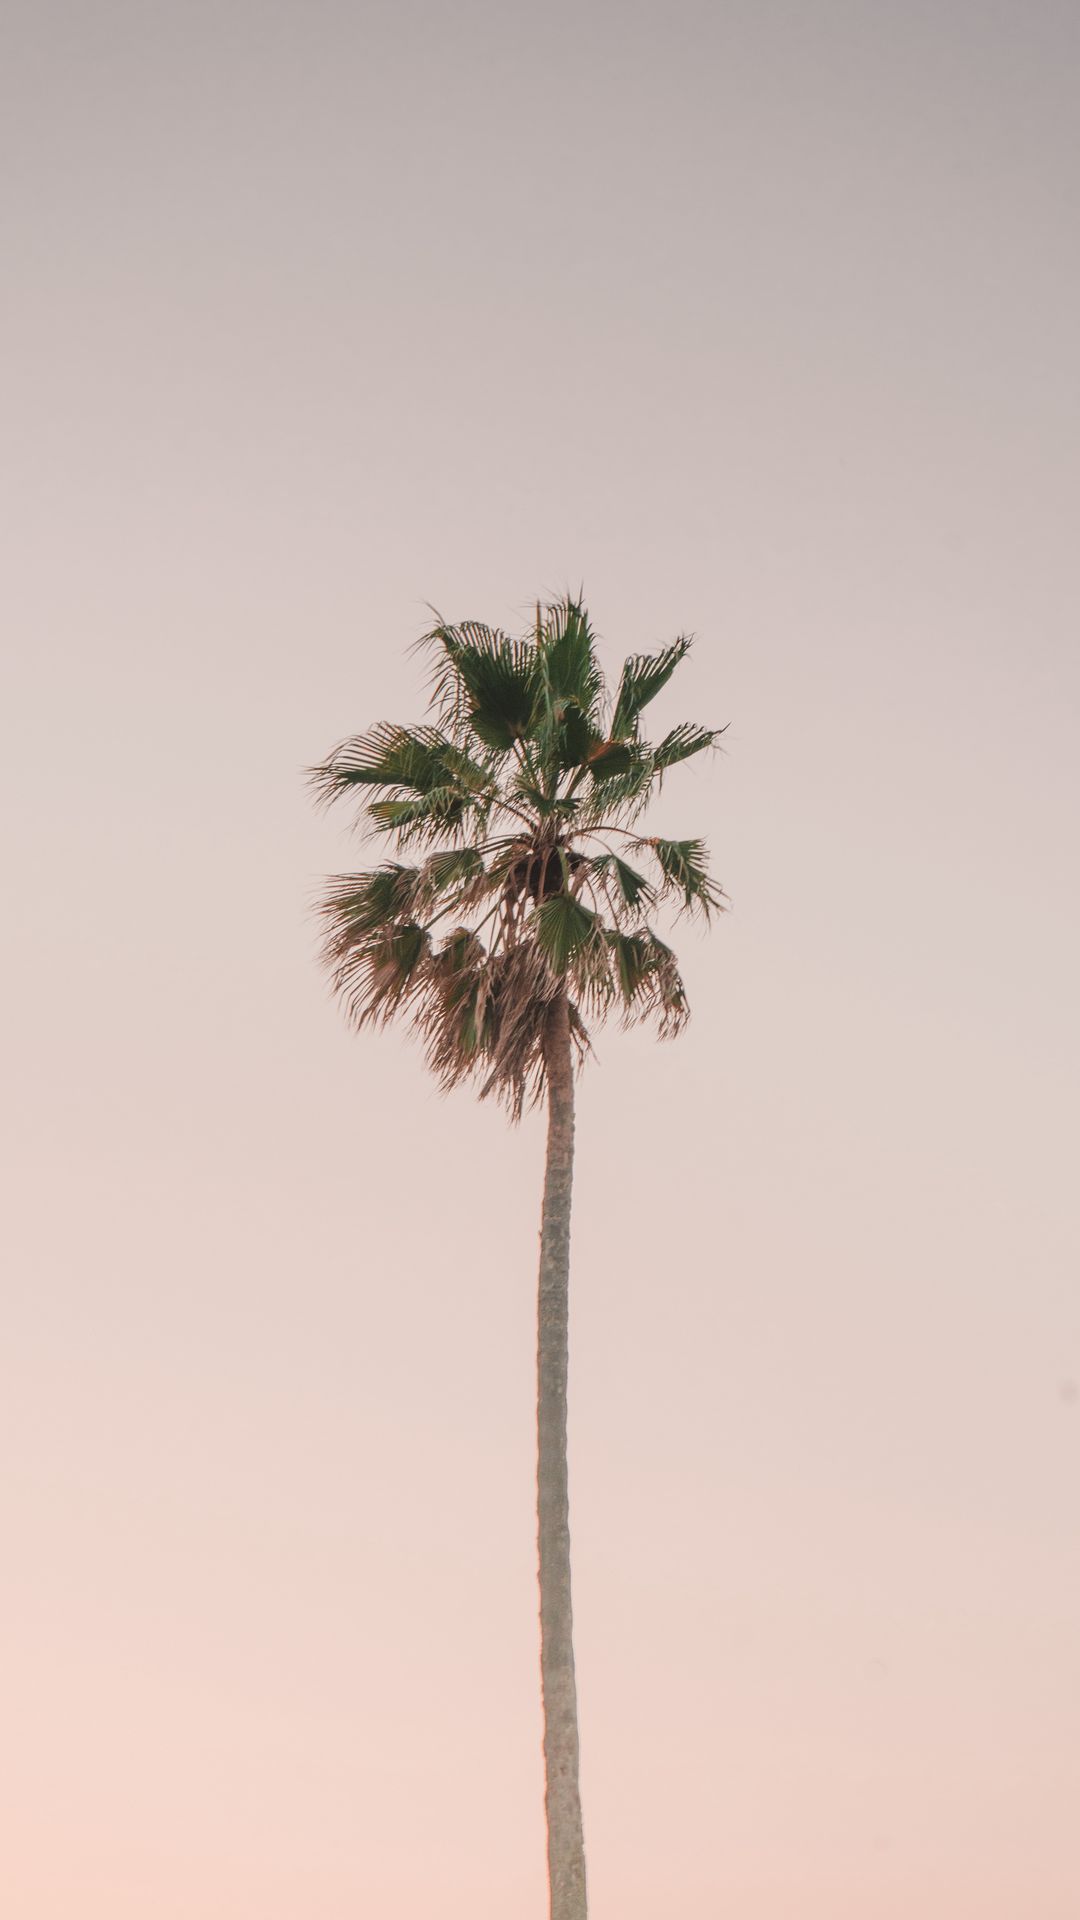 Download wallpaper 1080x1920 palm tree, tree, minimalism, sky samsung ...